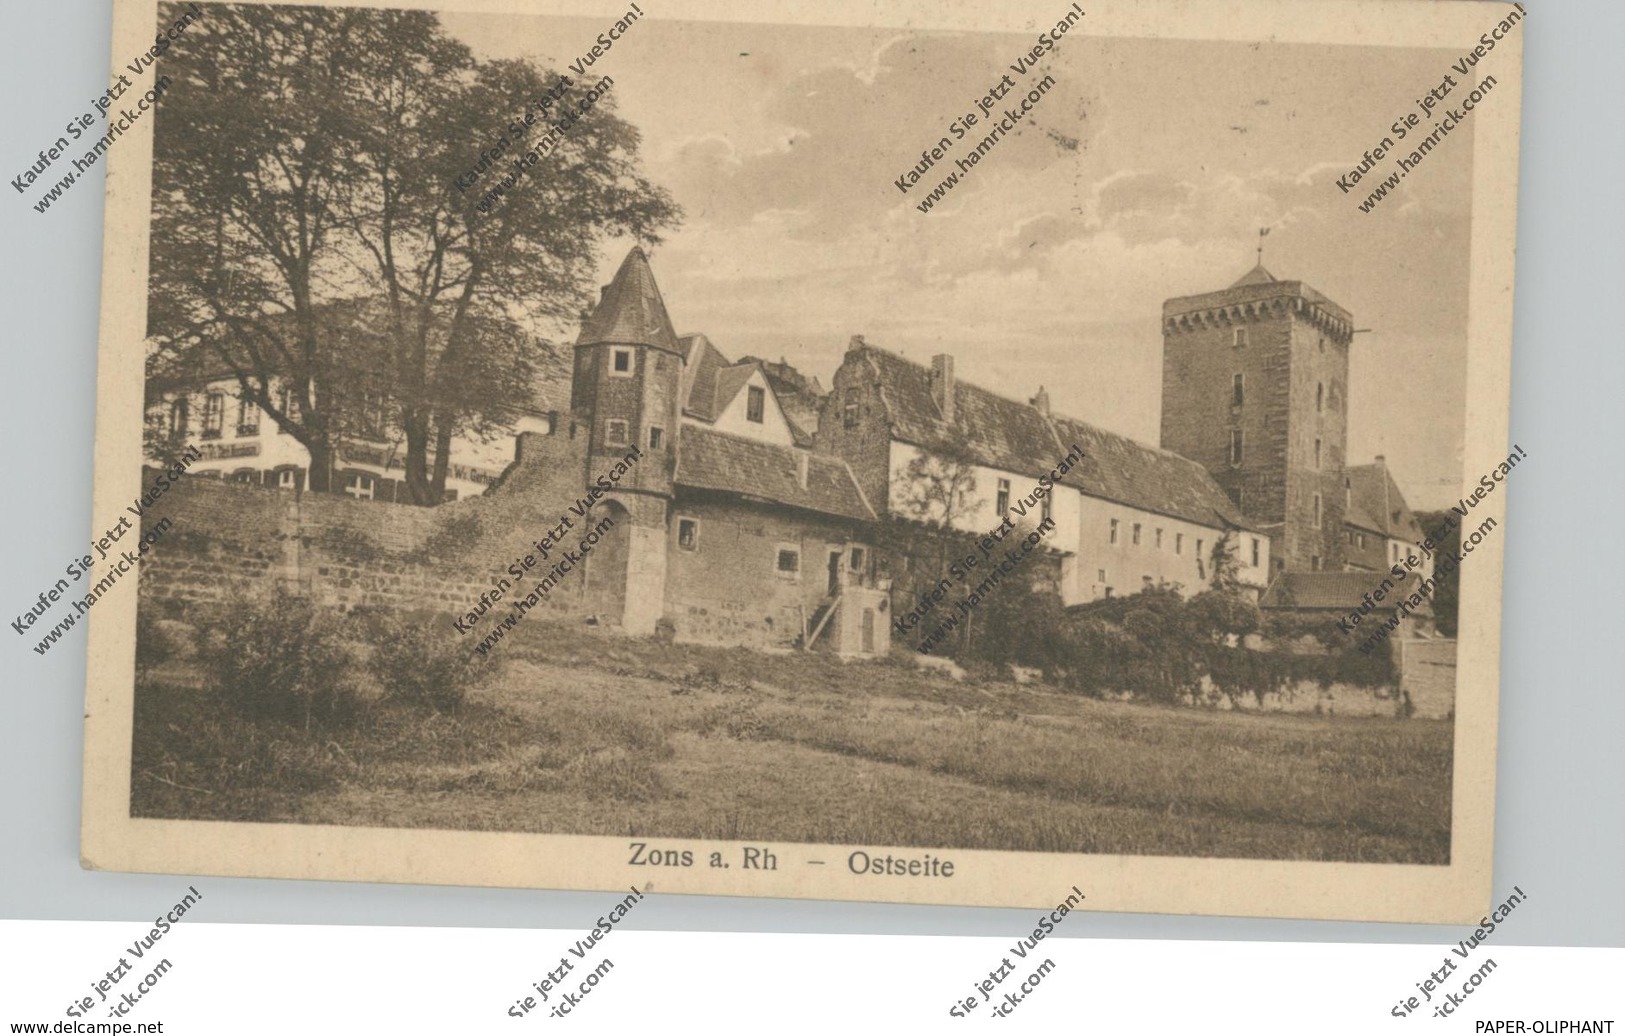 4047 DORMAGEN - ZONS, Ostseite, Rheinufer, 1922 - Dormagen